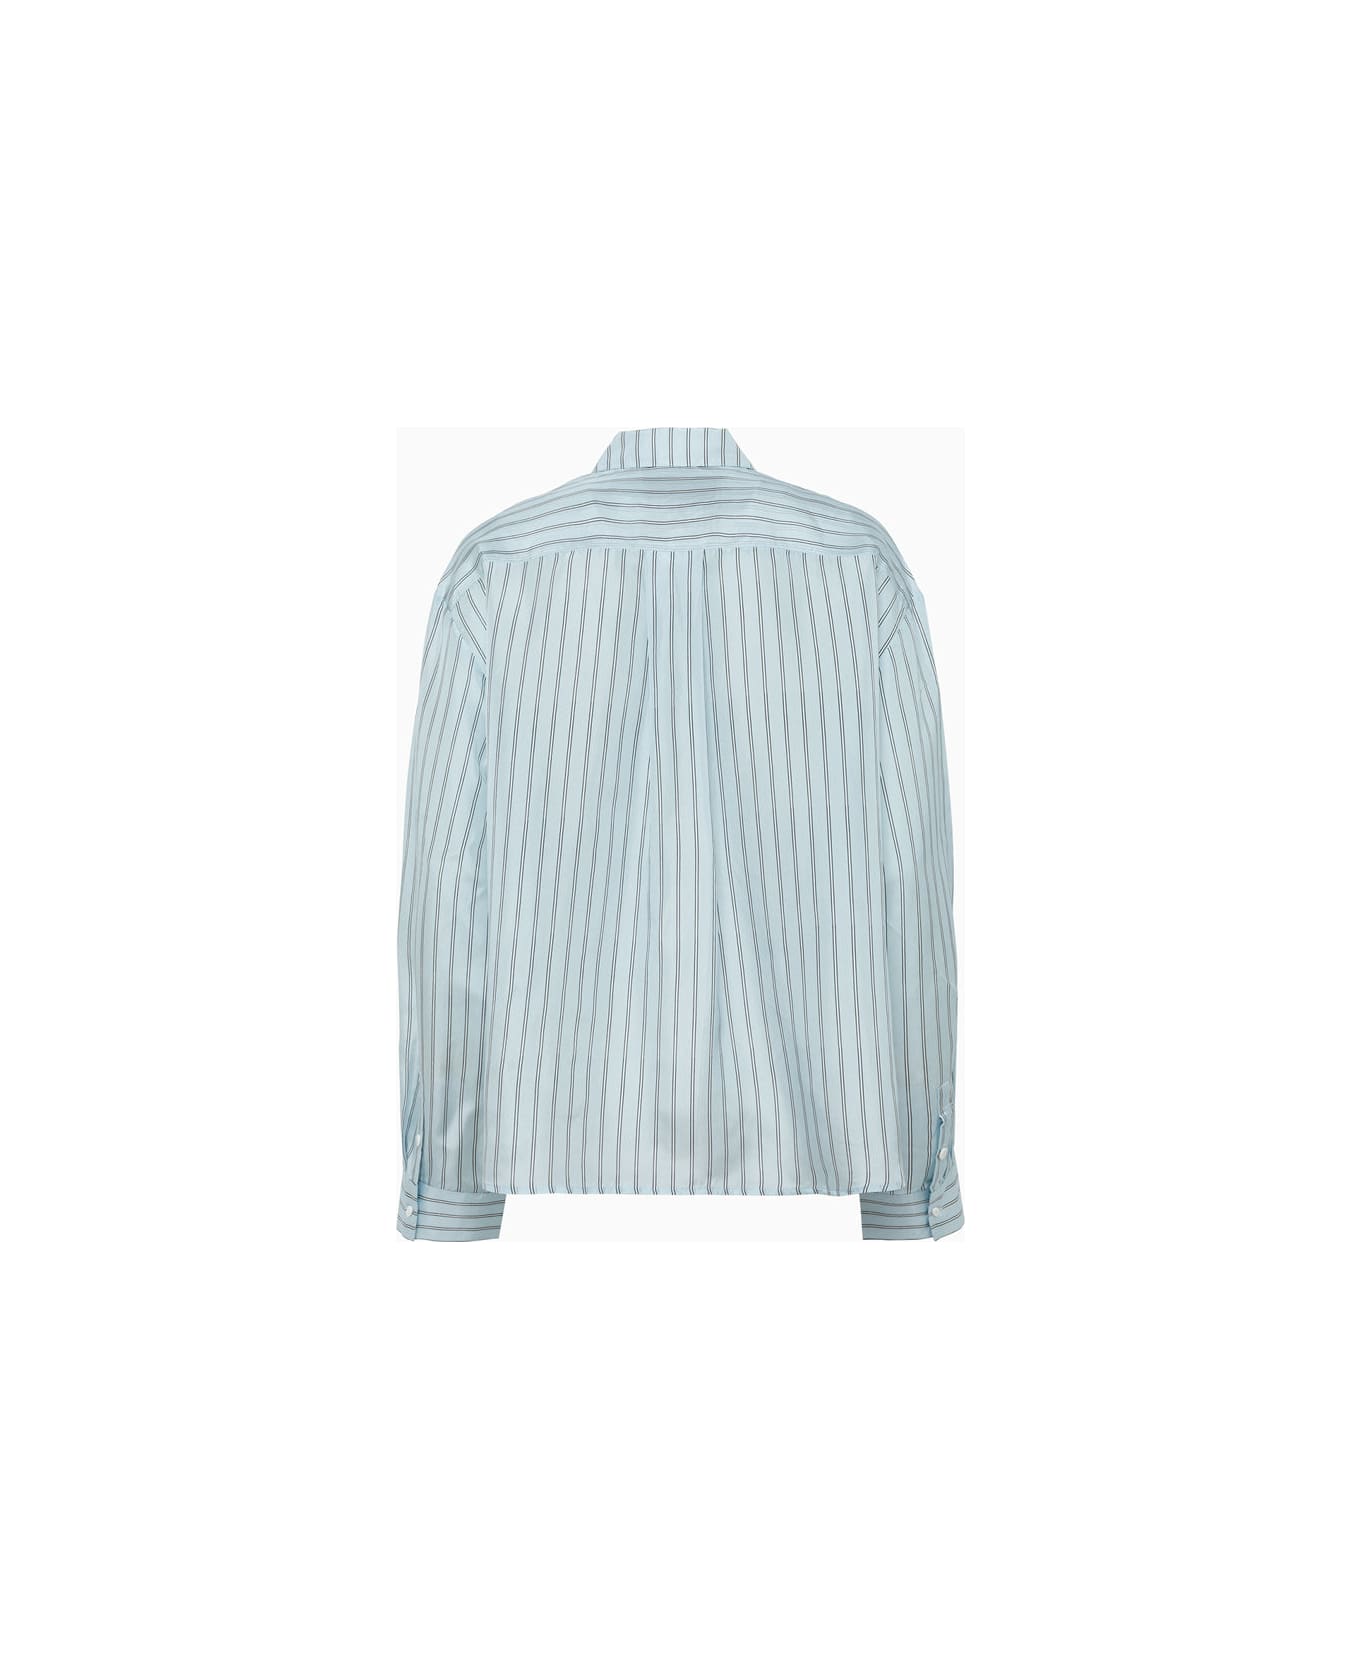 Herskind River Shirt - Light Blue Stripe